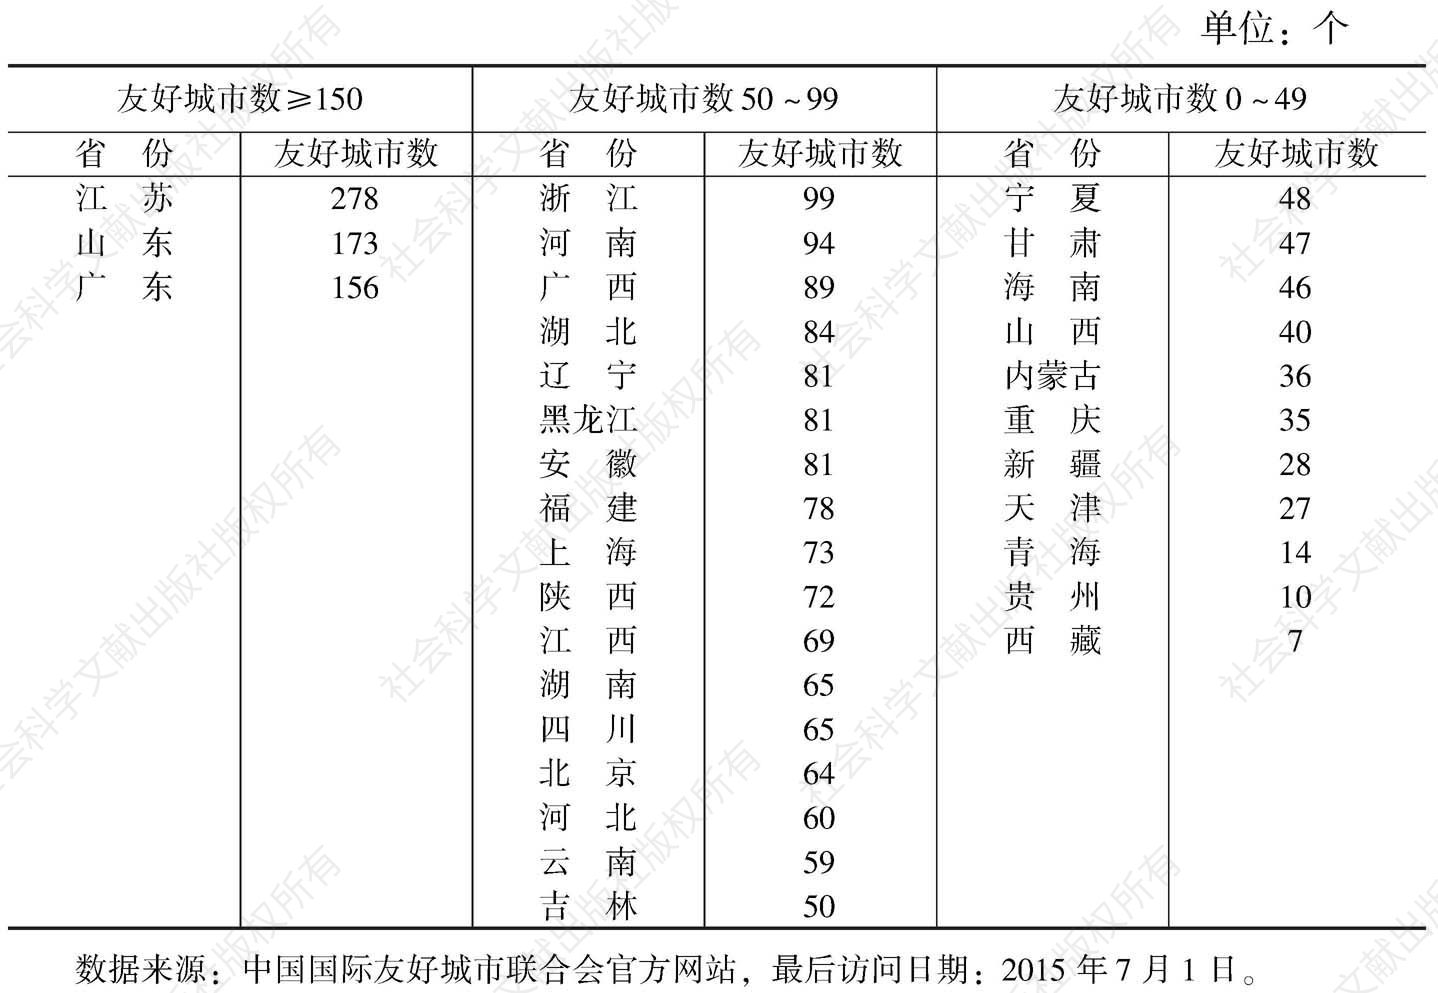 表3-3 中国各省、自治区、直辖市友好城市数量分布